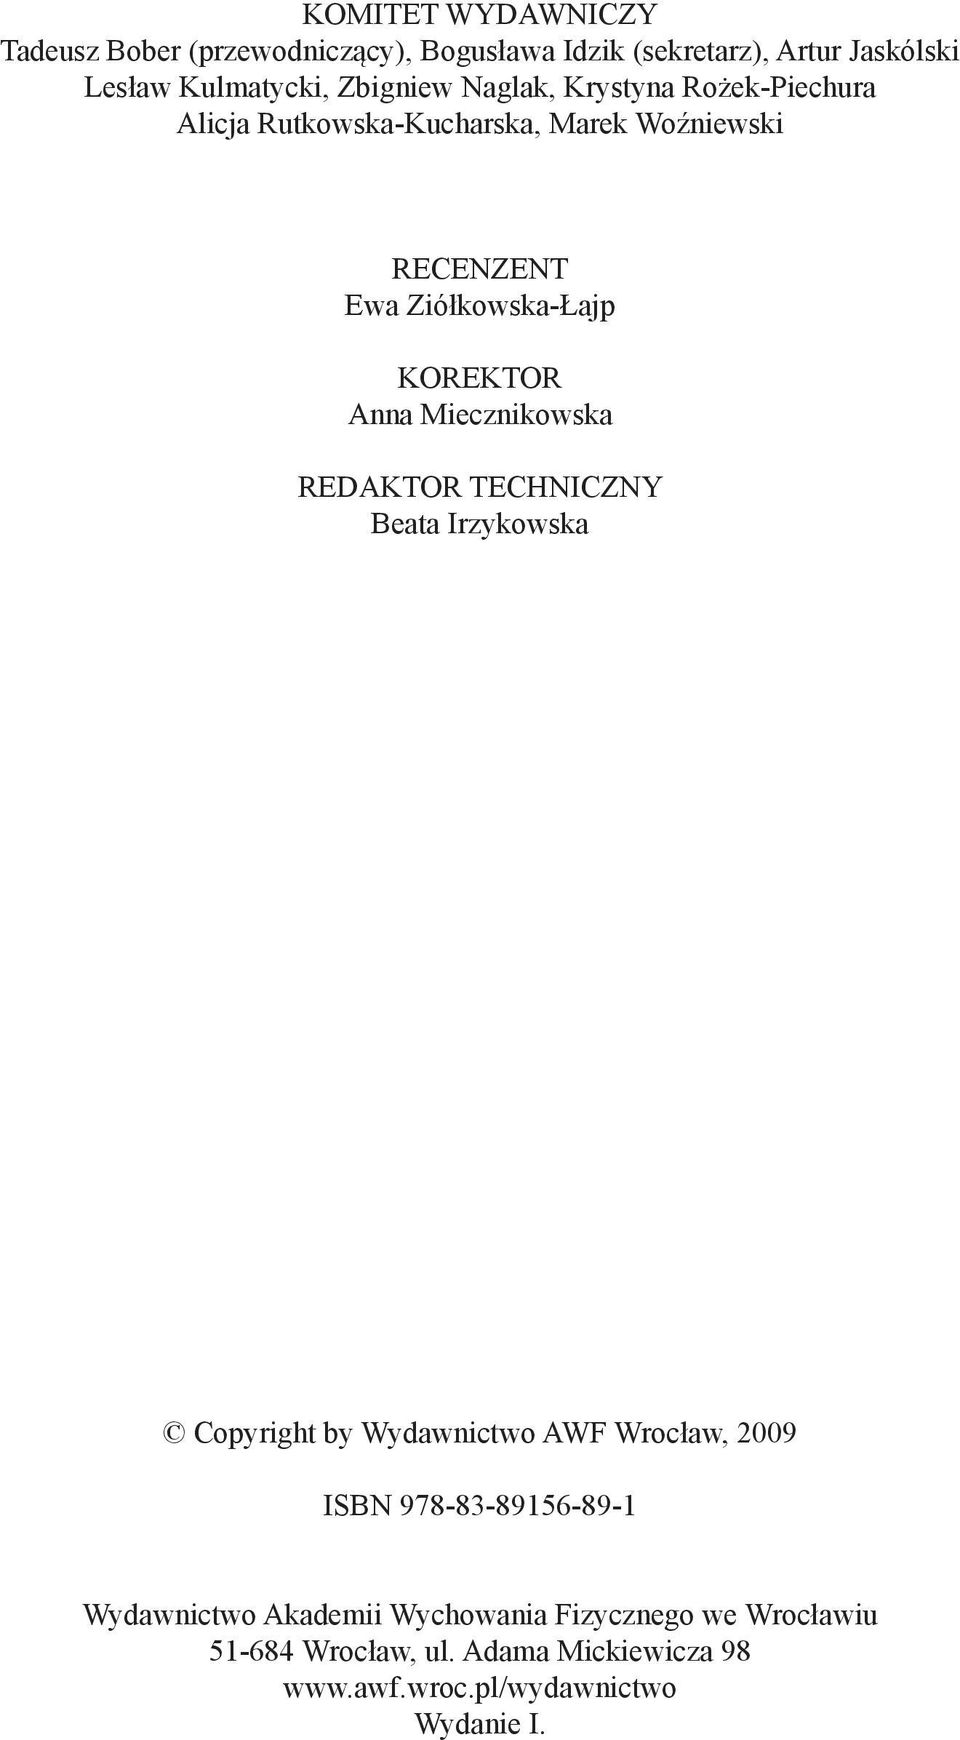 Miecznikowska REDAKTOR TECHNICZNY Beata Irzykowska Copyright by Wydawnictwo AWF Wrocław, 2009 ISBN 978-83-89156-89-1